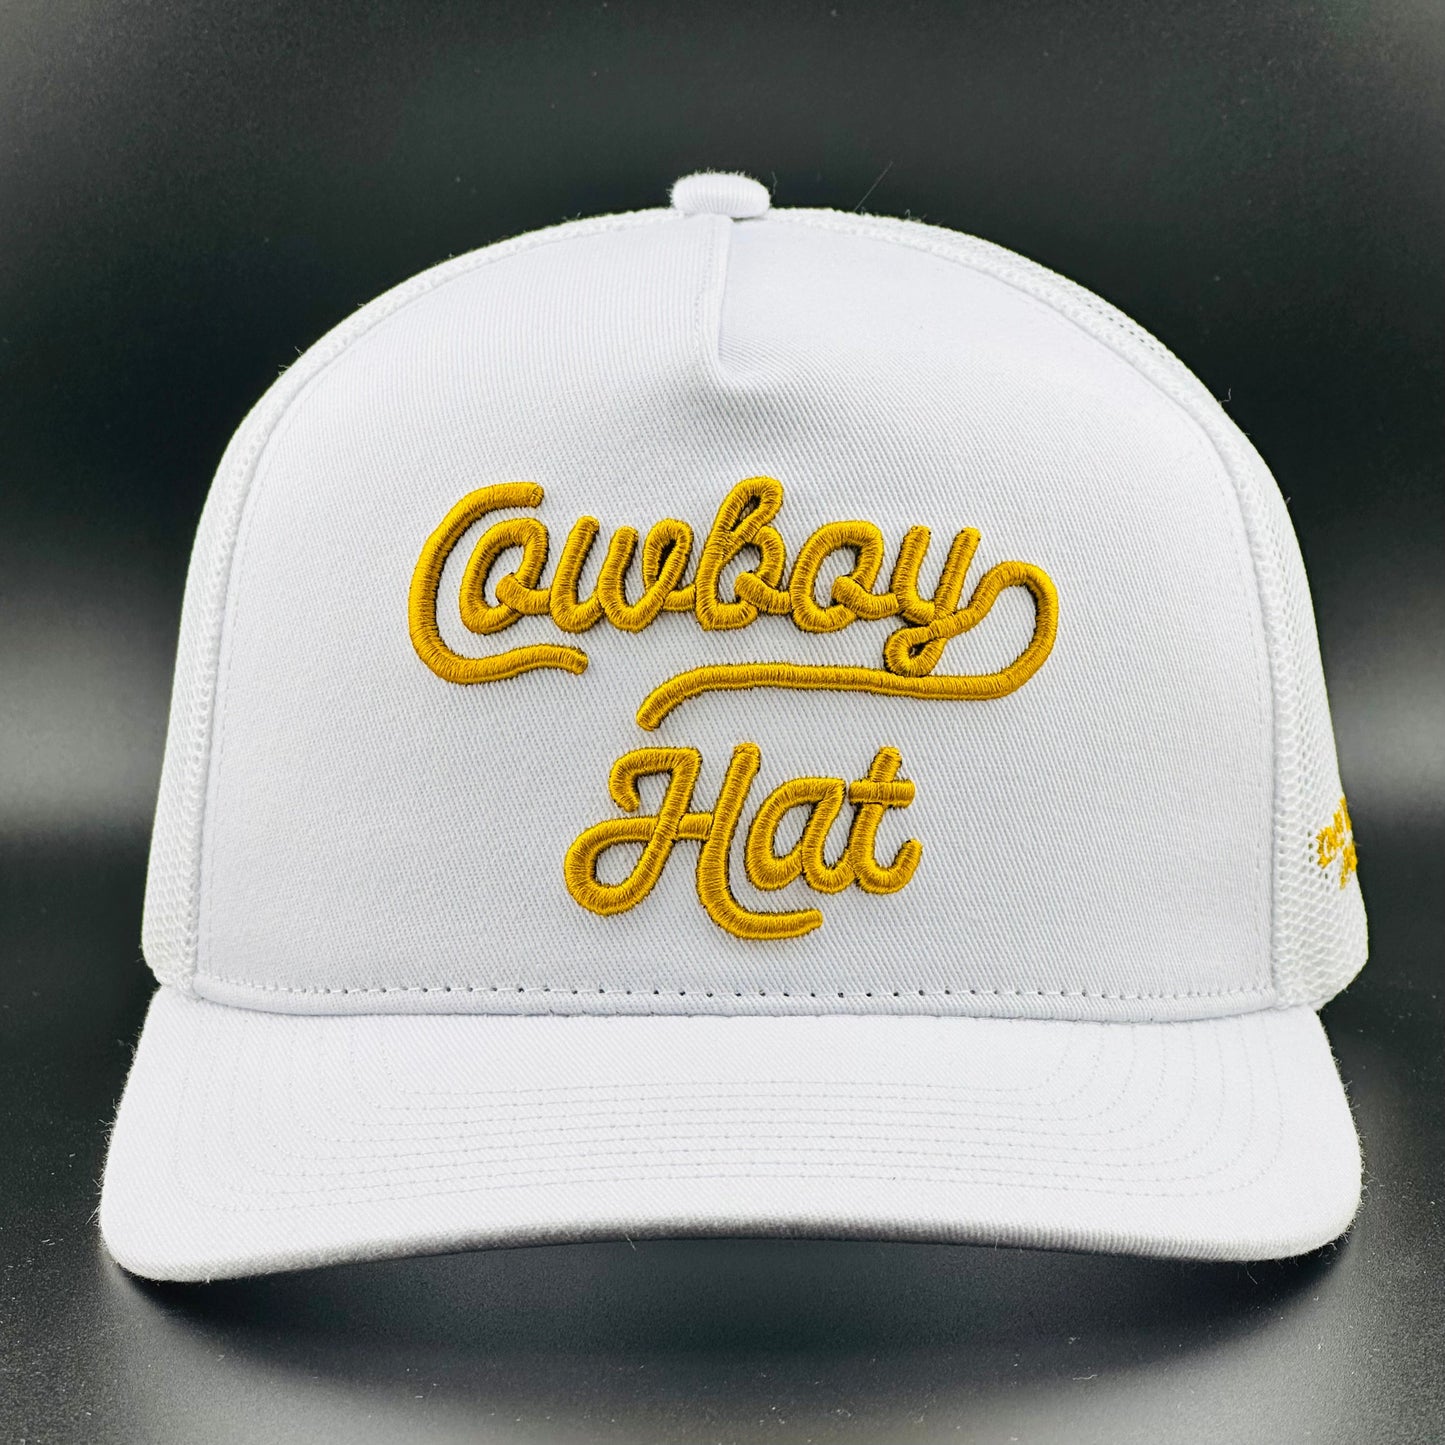 
                  
                    “Cowboy Hat” Cowboy Revolution White 5-panel Trucker Hat
                  
                